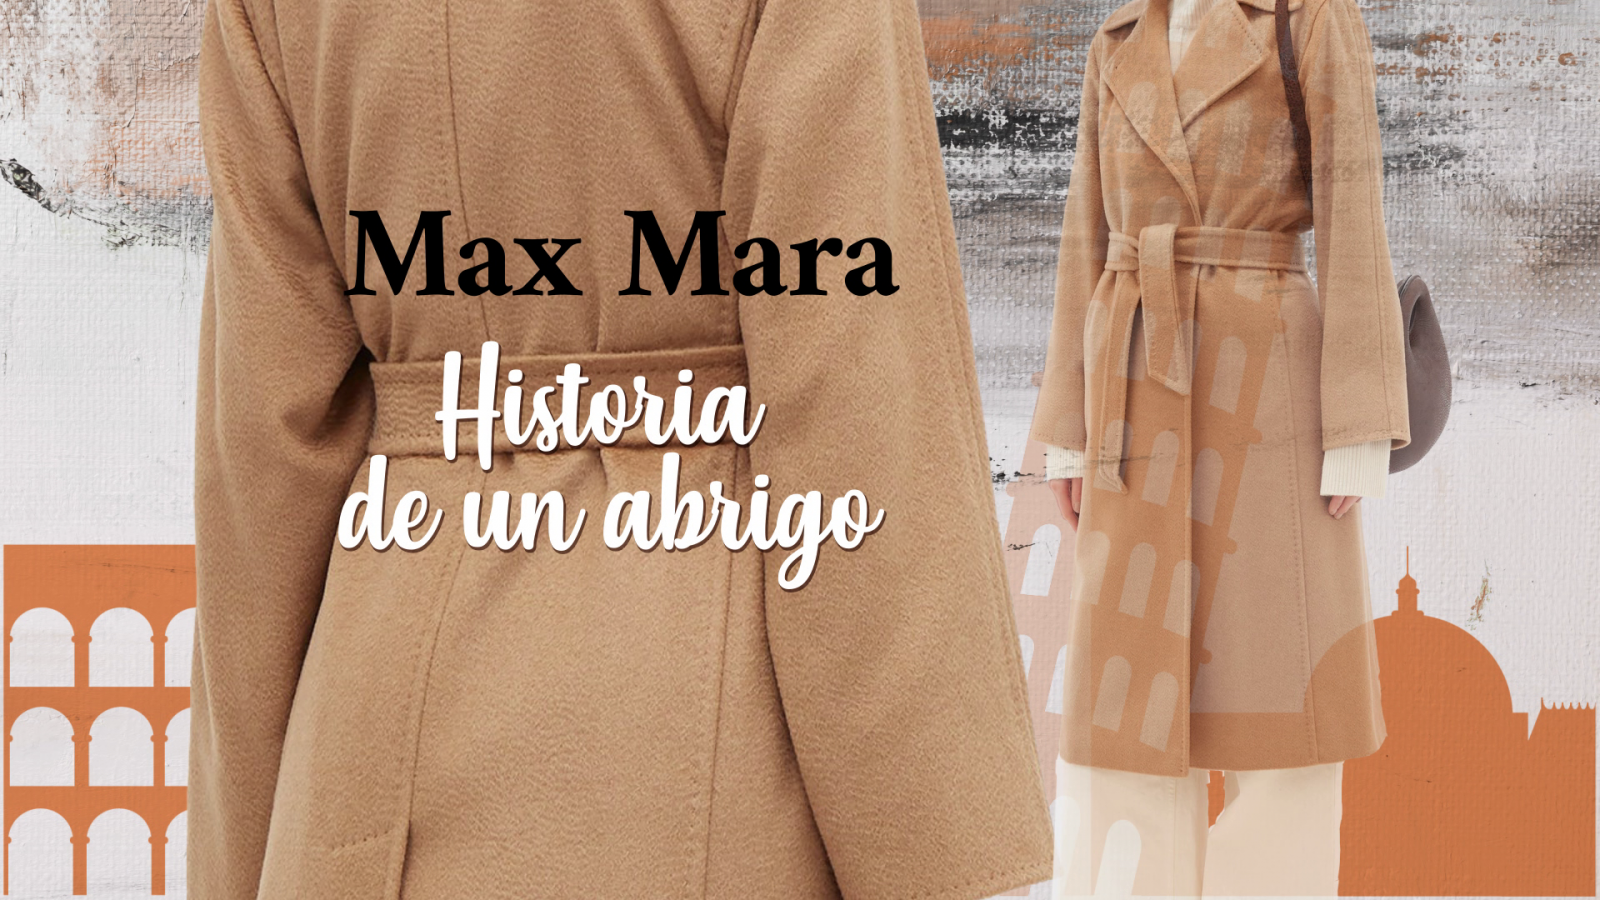 Flash Moda Monográficos - Max Mara, historia de un abrigo - RTVE.es